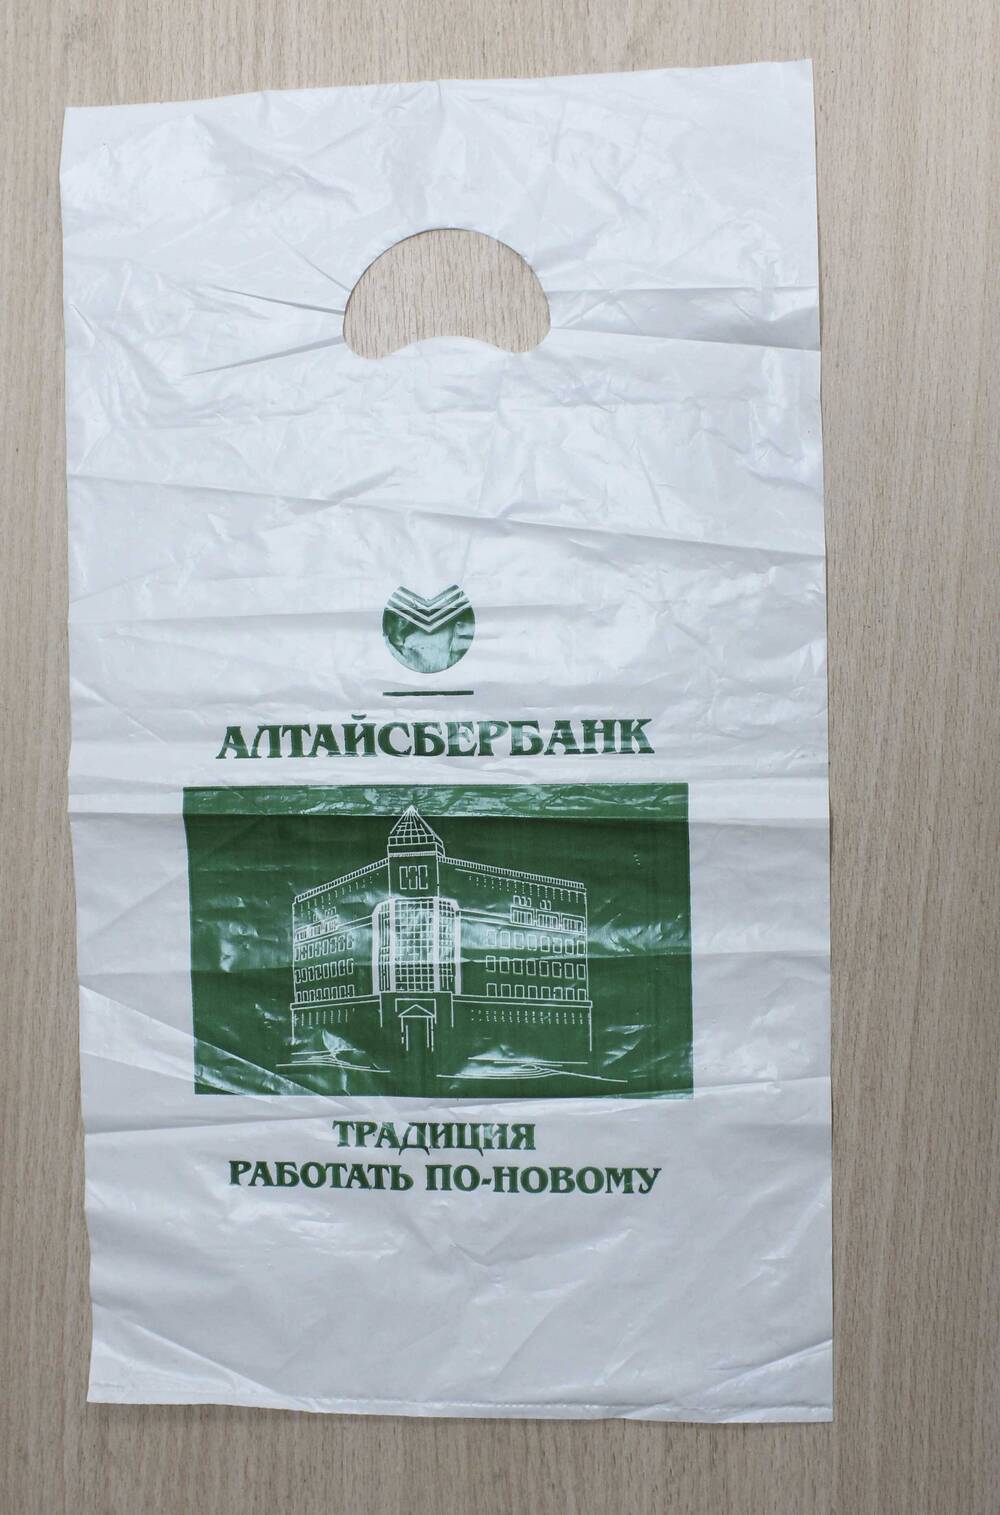 Пакет полиэтиленовый с рекламой Алтайсбербанка. 1990-е гг. Подлинник.